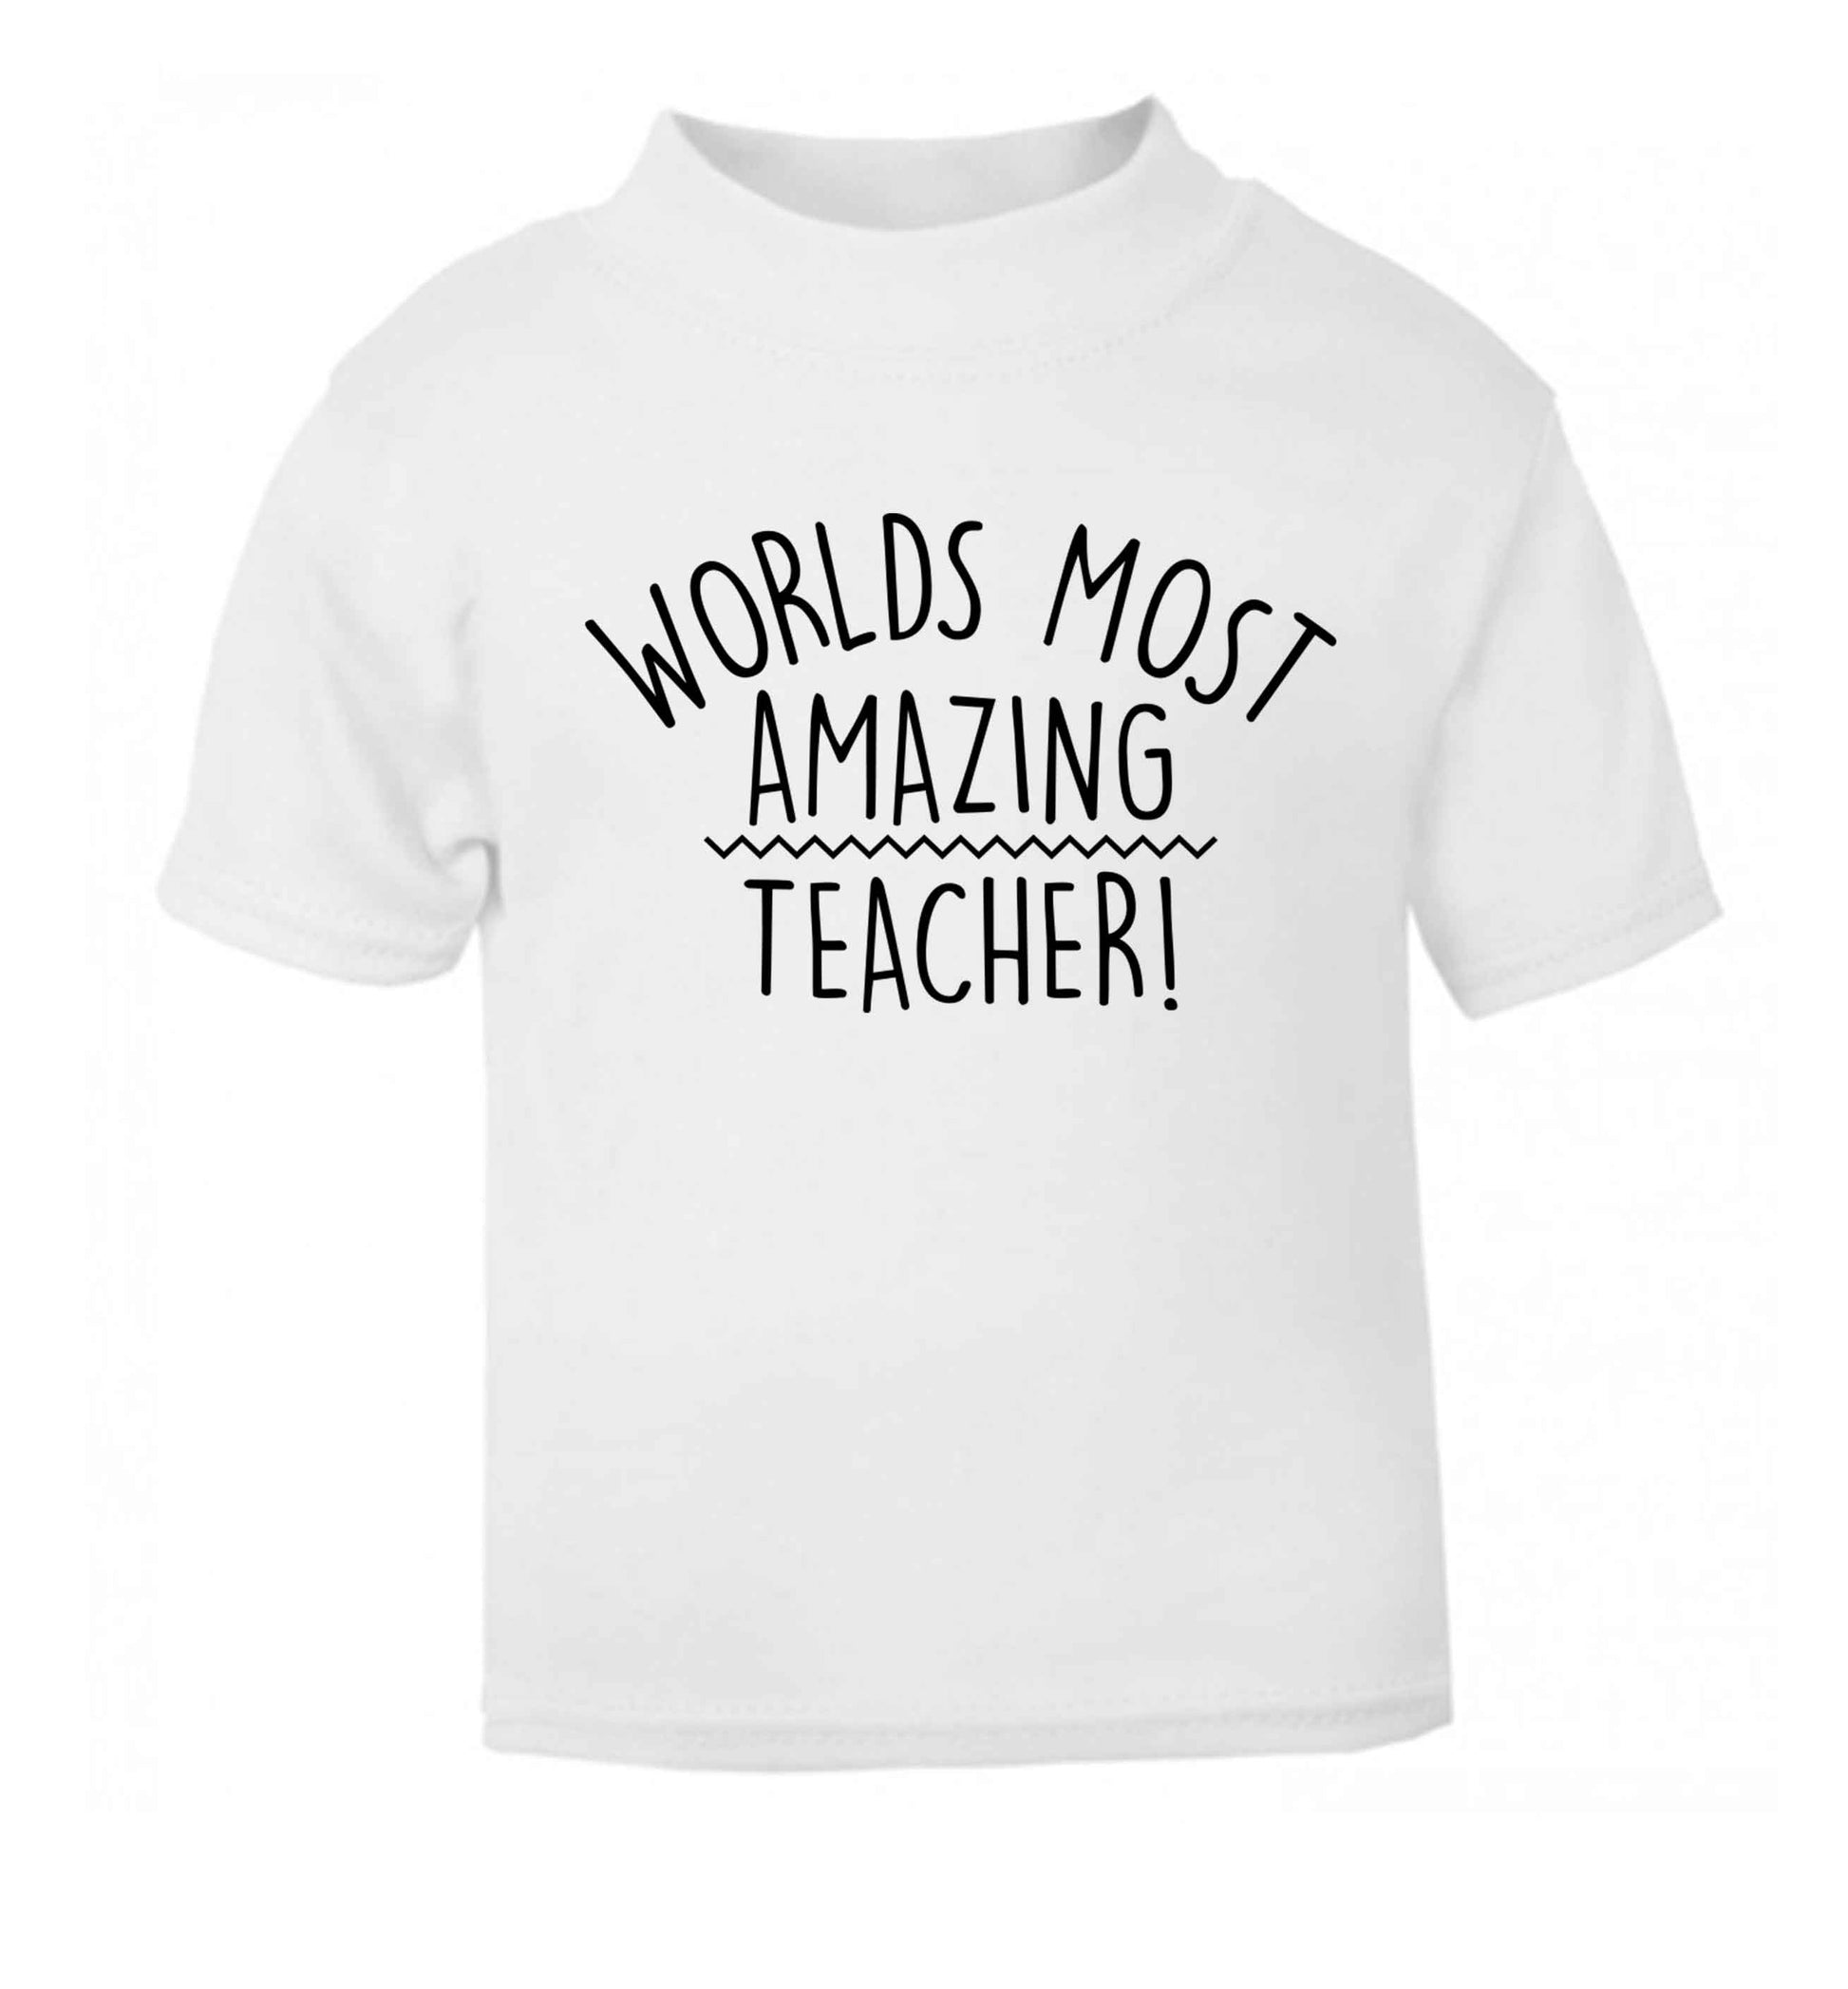 Worlds most amazing teacher white baby toddler Tshirt 2 Years